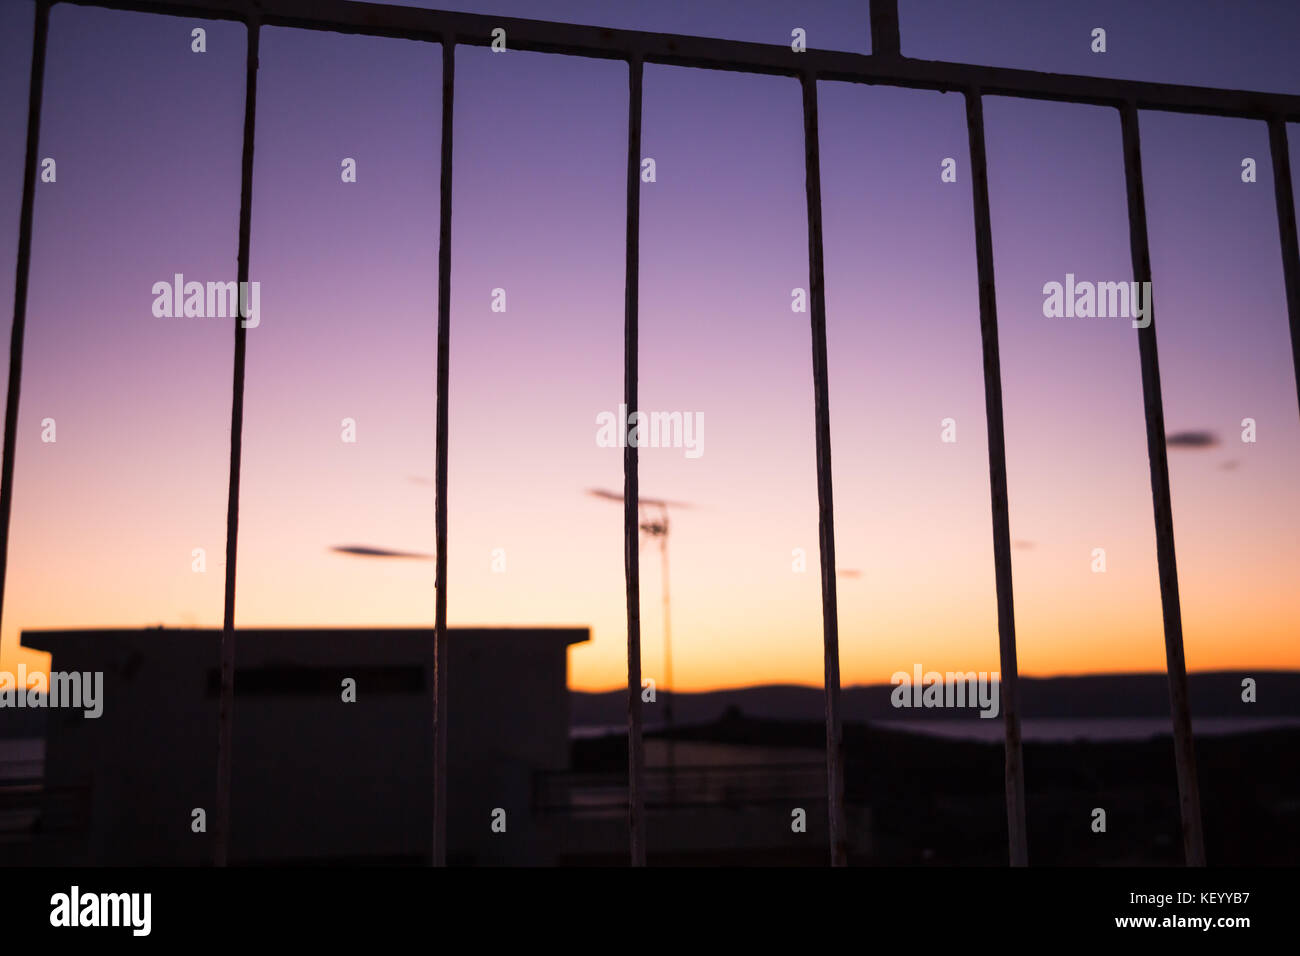 Vívido y colorido Amanecer/Atardecer cielo visto detrás de las rejas. Foto de stock